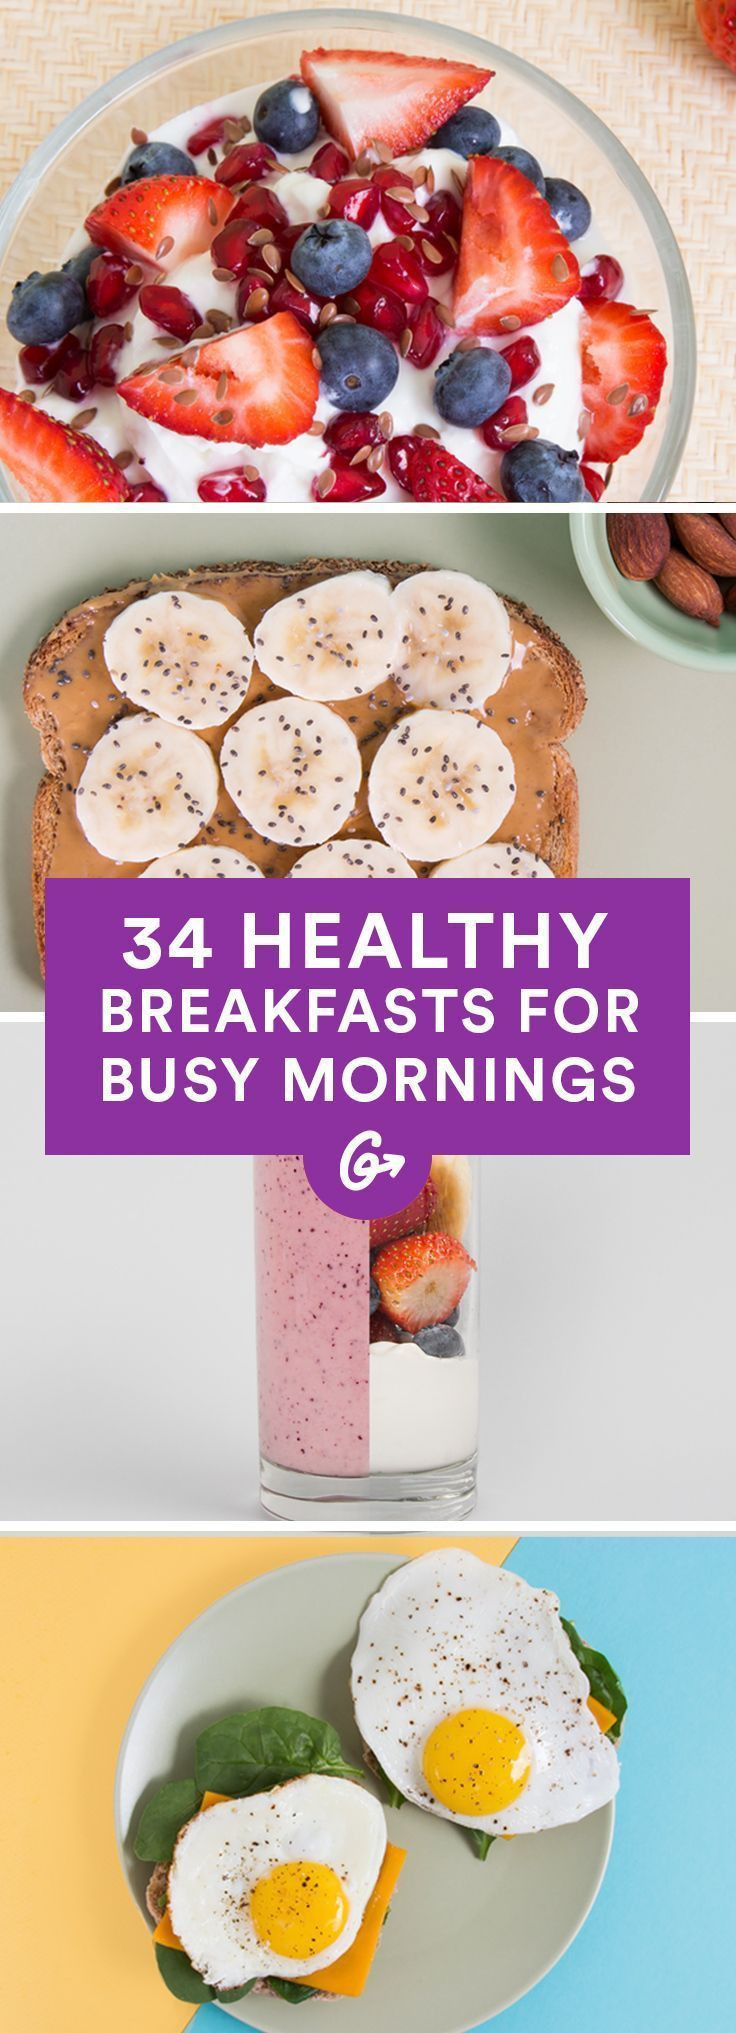 Healthy Breakfast Pinterest
 25 best ideas about Healthy breakfasts on Pinterest